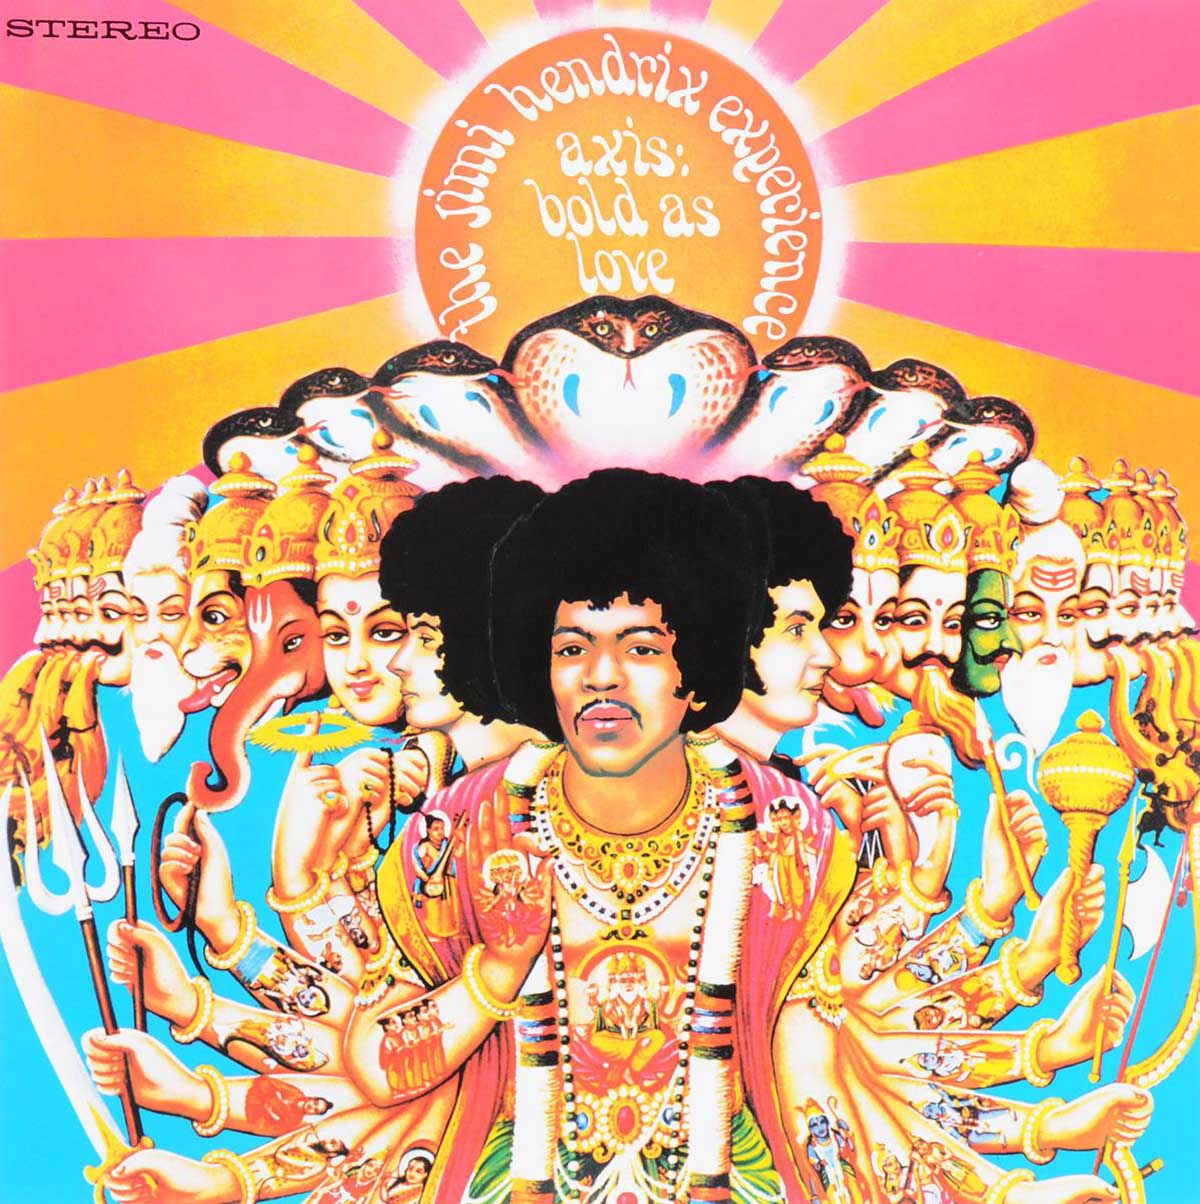 Portada de "Axis: Bold As Love" (1967) de Jimi Hendrix